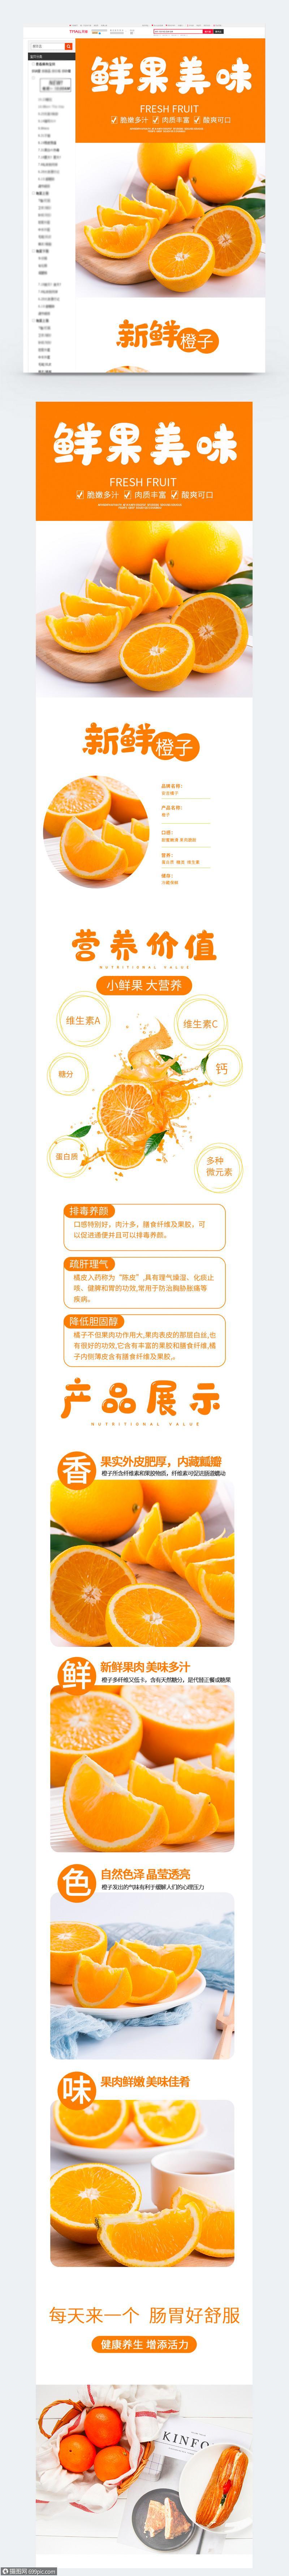 橙子淘宝详情页水果电商